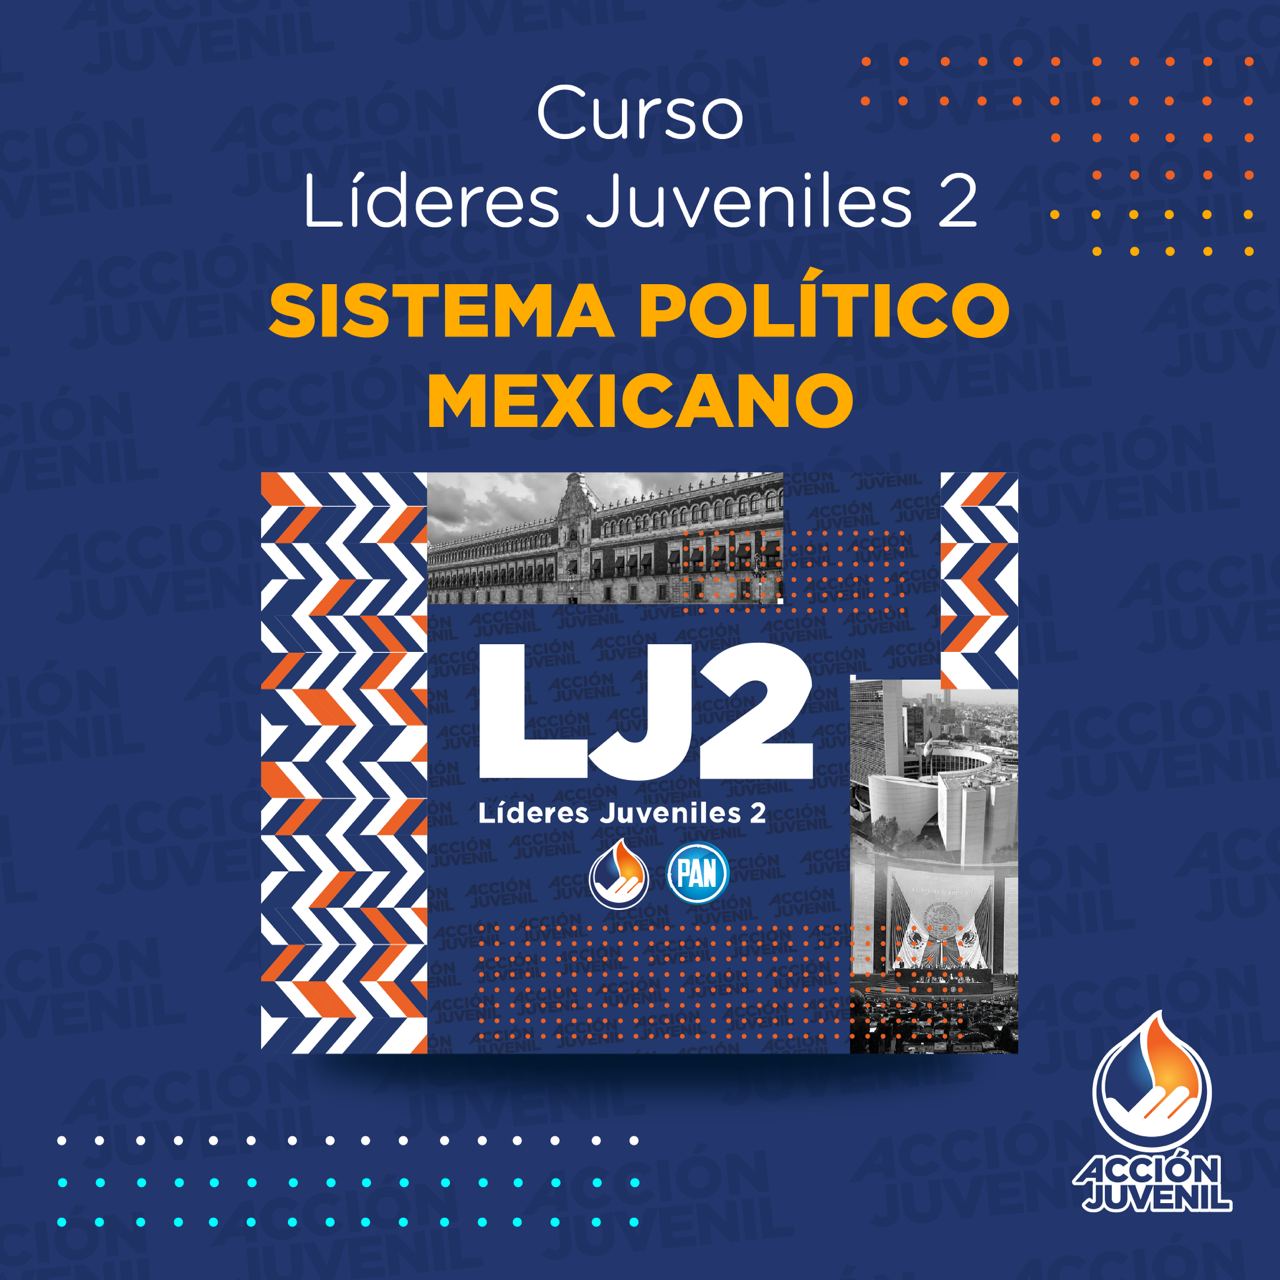 Curso Líderes Juveniles 2 Sistema Político Mexicano Irapuato, GTO 26/06/22